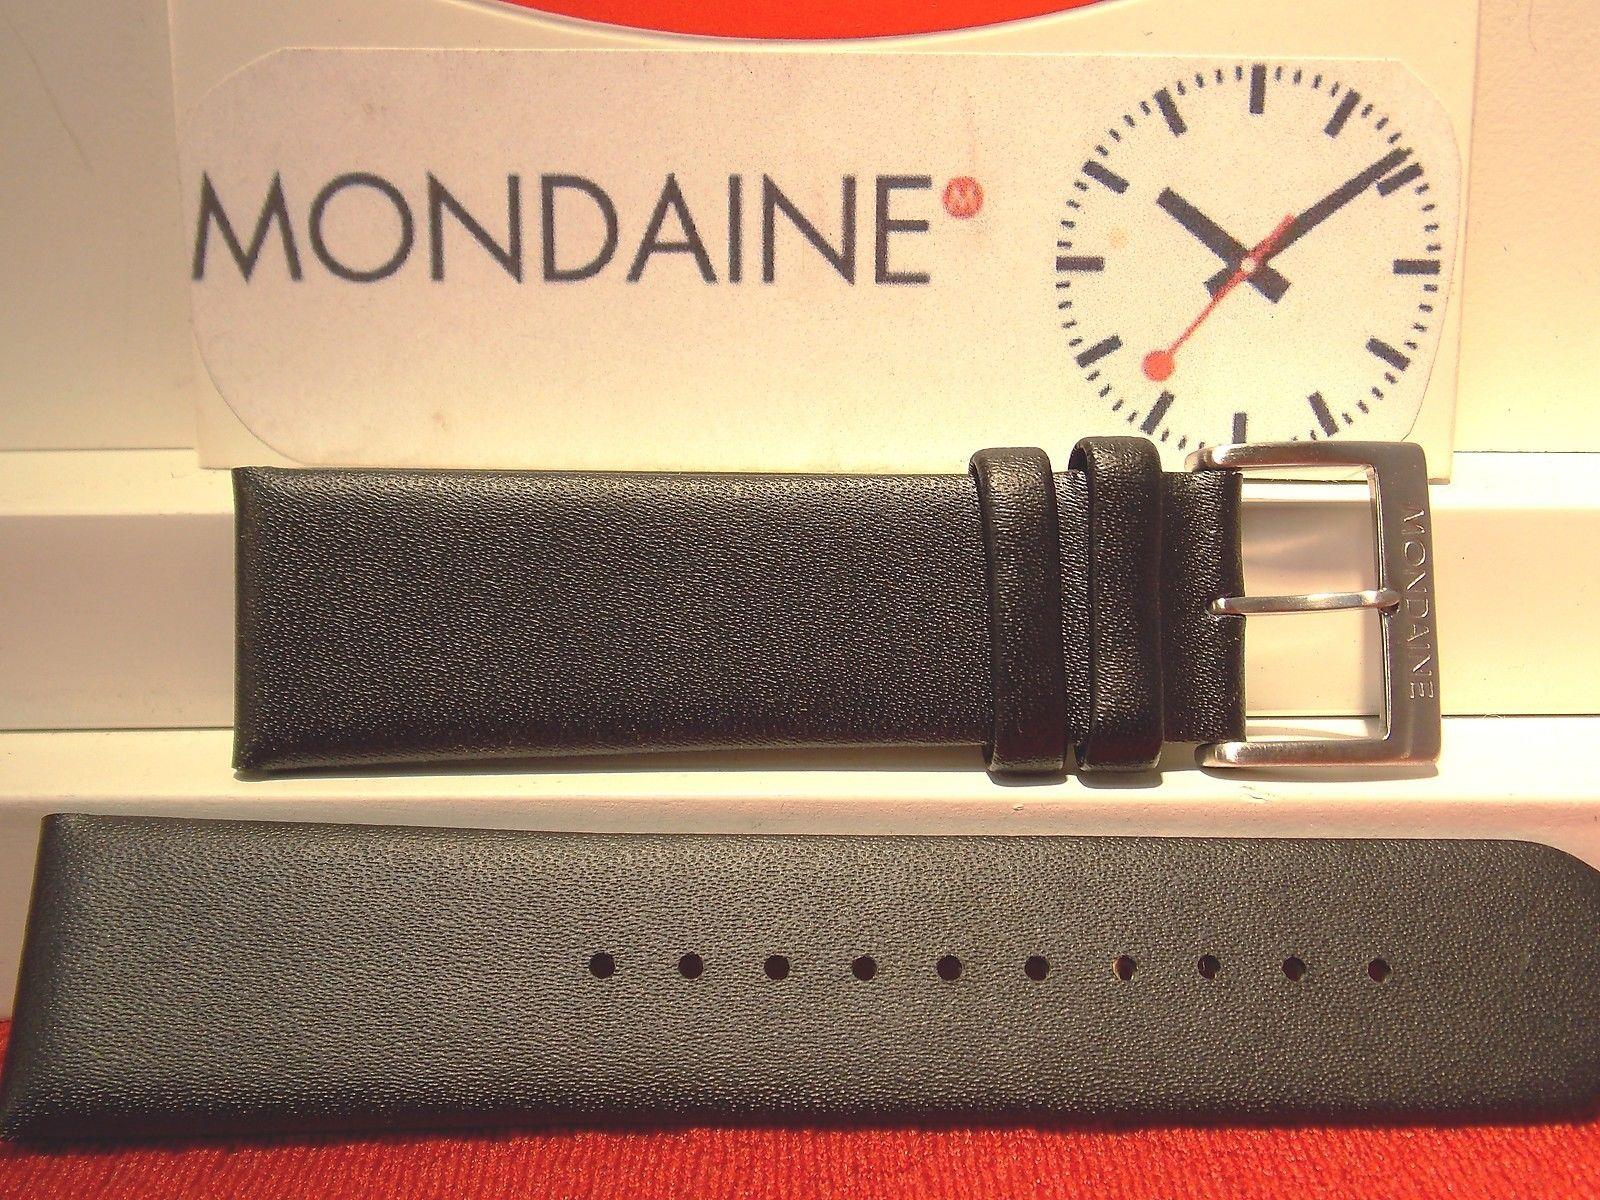 Mondaine Swiss Railways Original Watchband 22mm Black Leather Strap